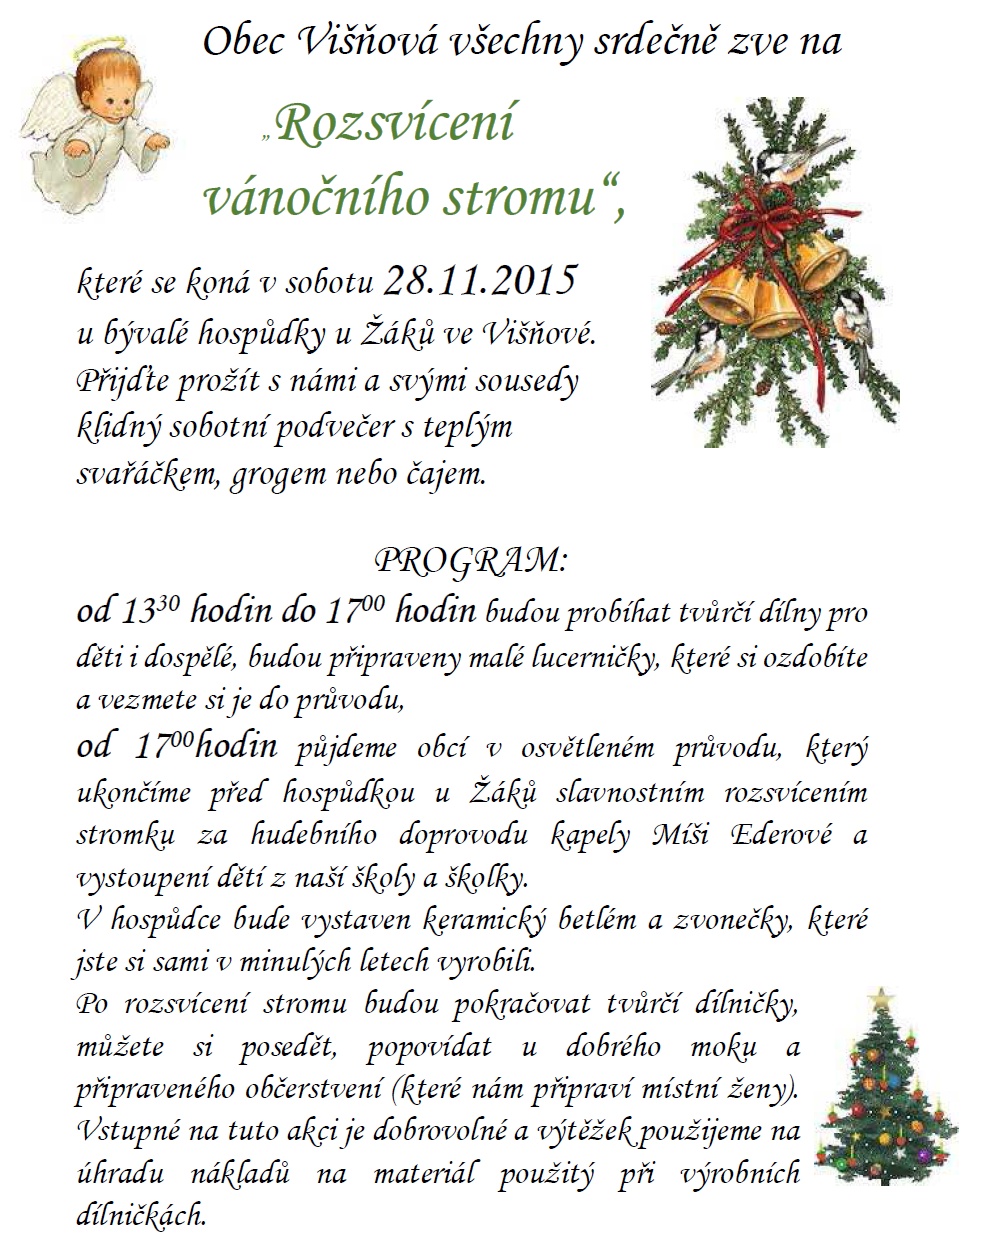 Pozvánka na rozsvícení vánočního stromu do Višňové